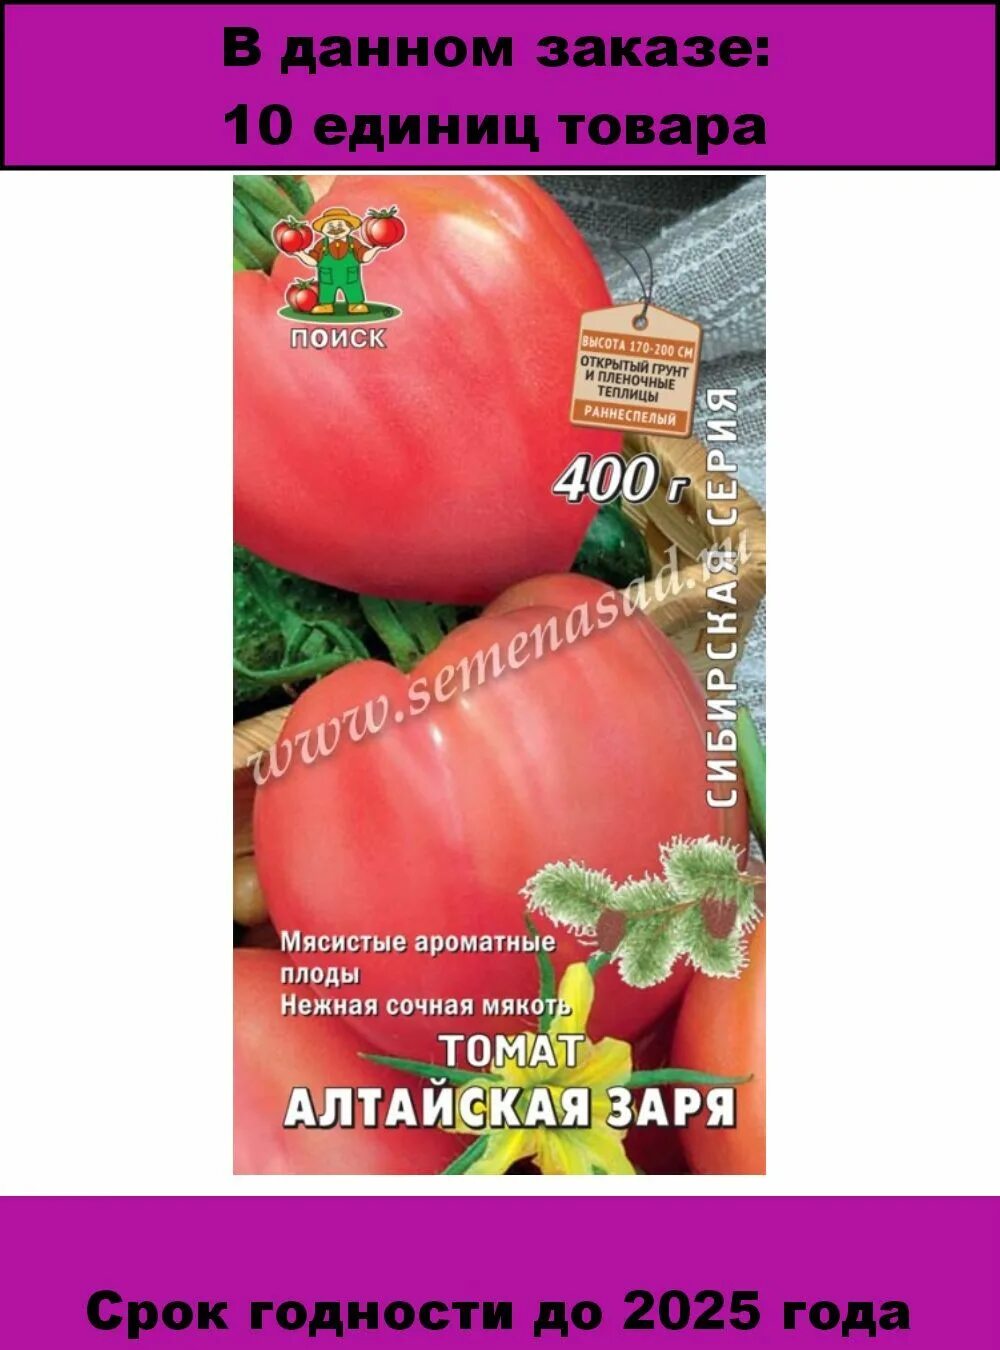 Алтайский розовый томат отзывы